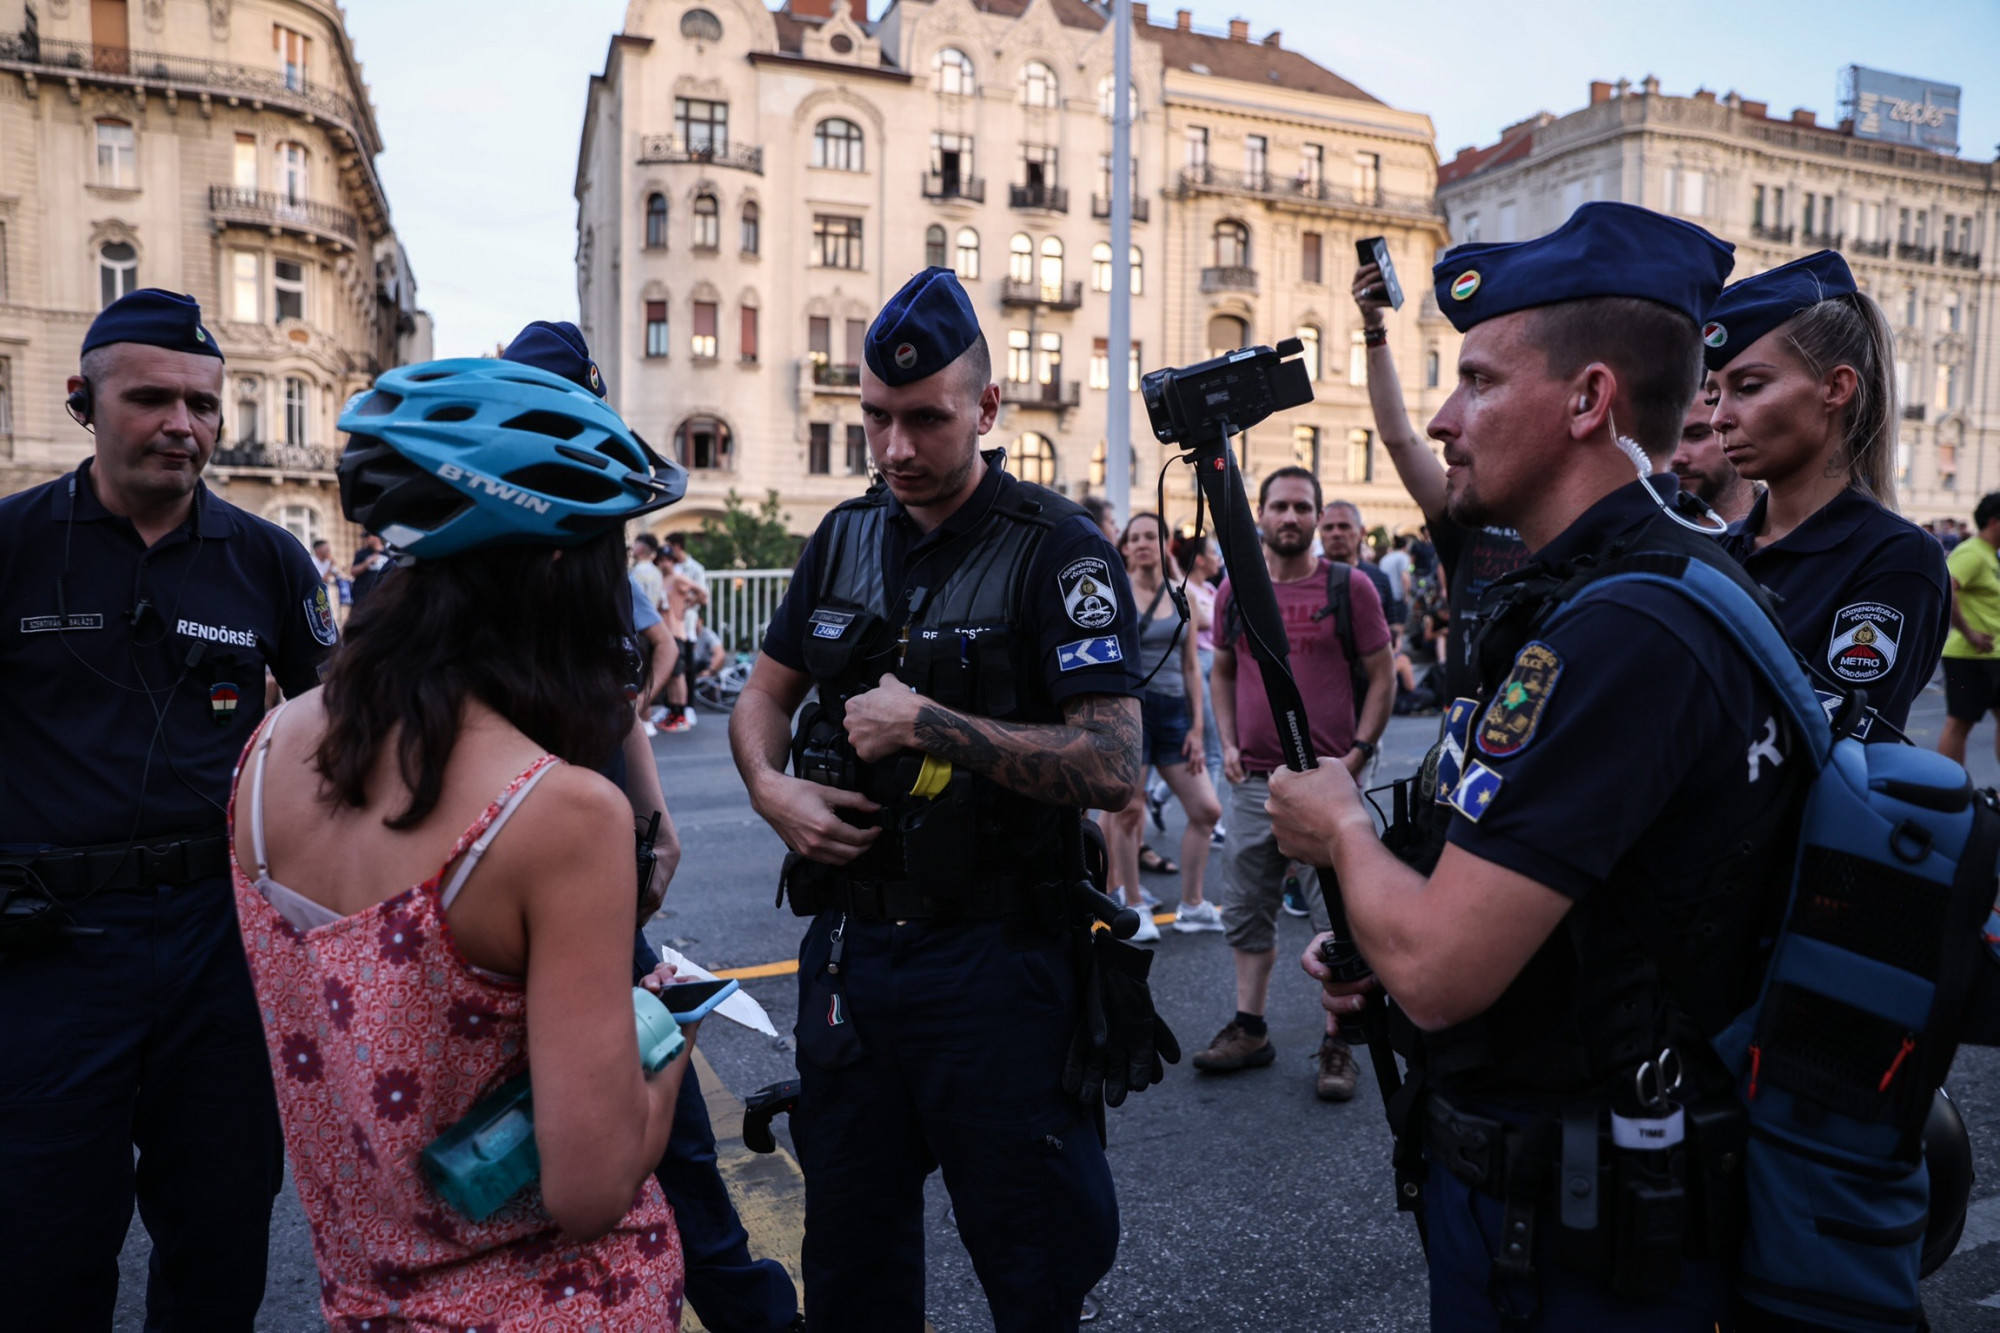 Vasárnap reggelig akárkit, akármikor, akármiért igazoltathatnak és átvizsgálhatnak a rendőrök Budapesten